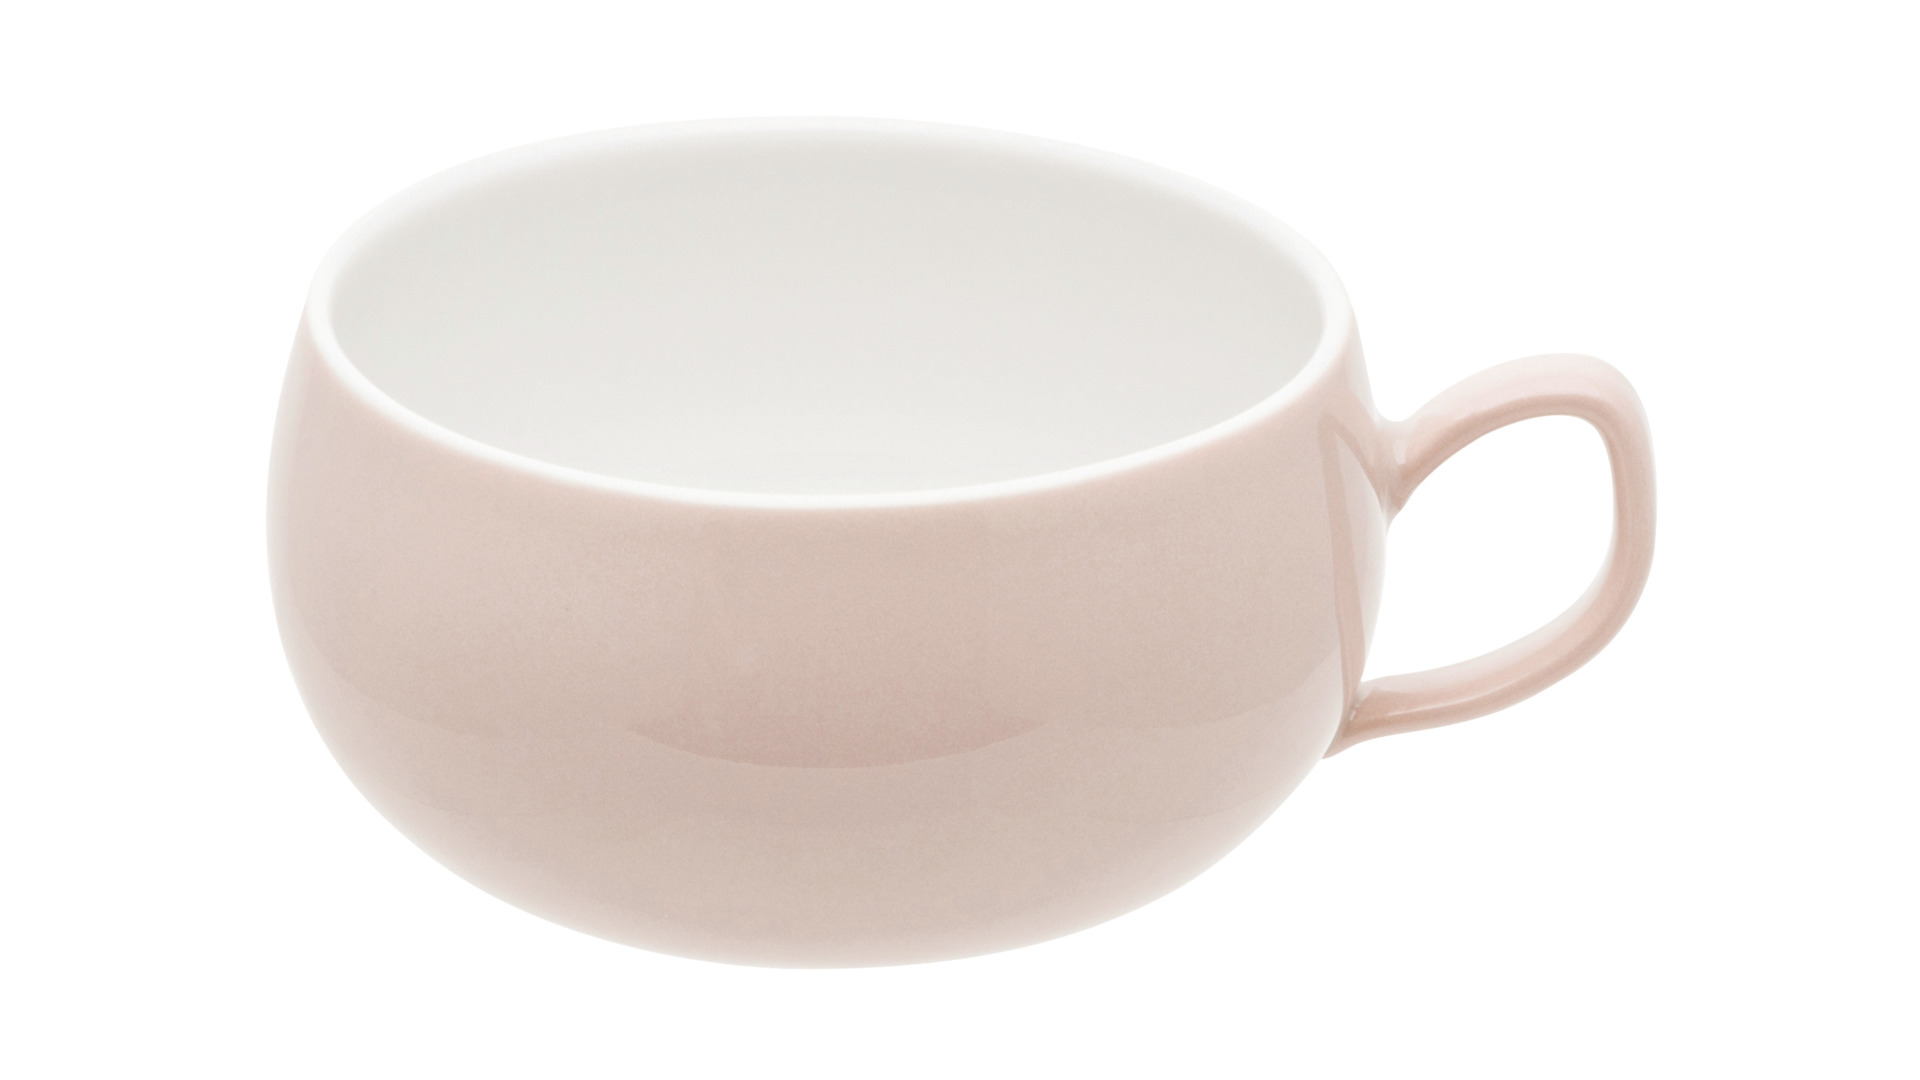 Чашка чайная с блюдцем Degrenne Salam 250 мл, фарфор, розовая